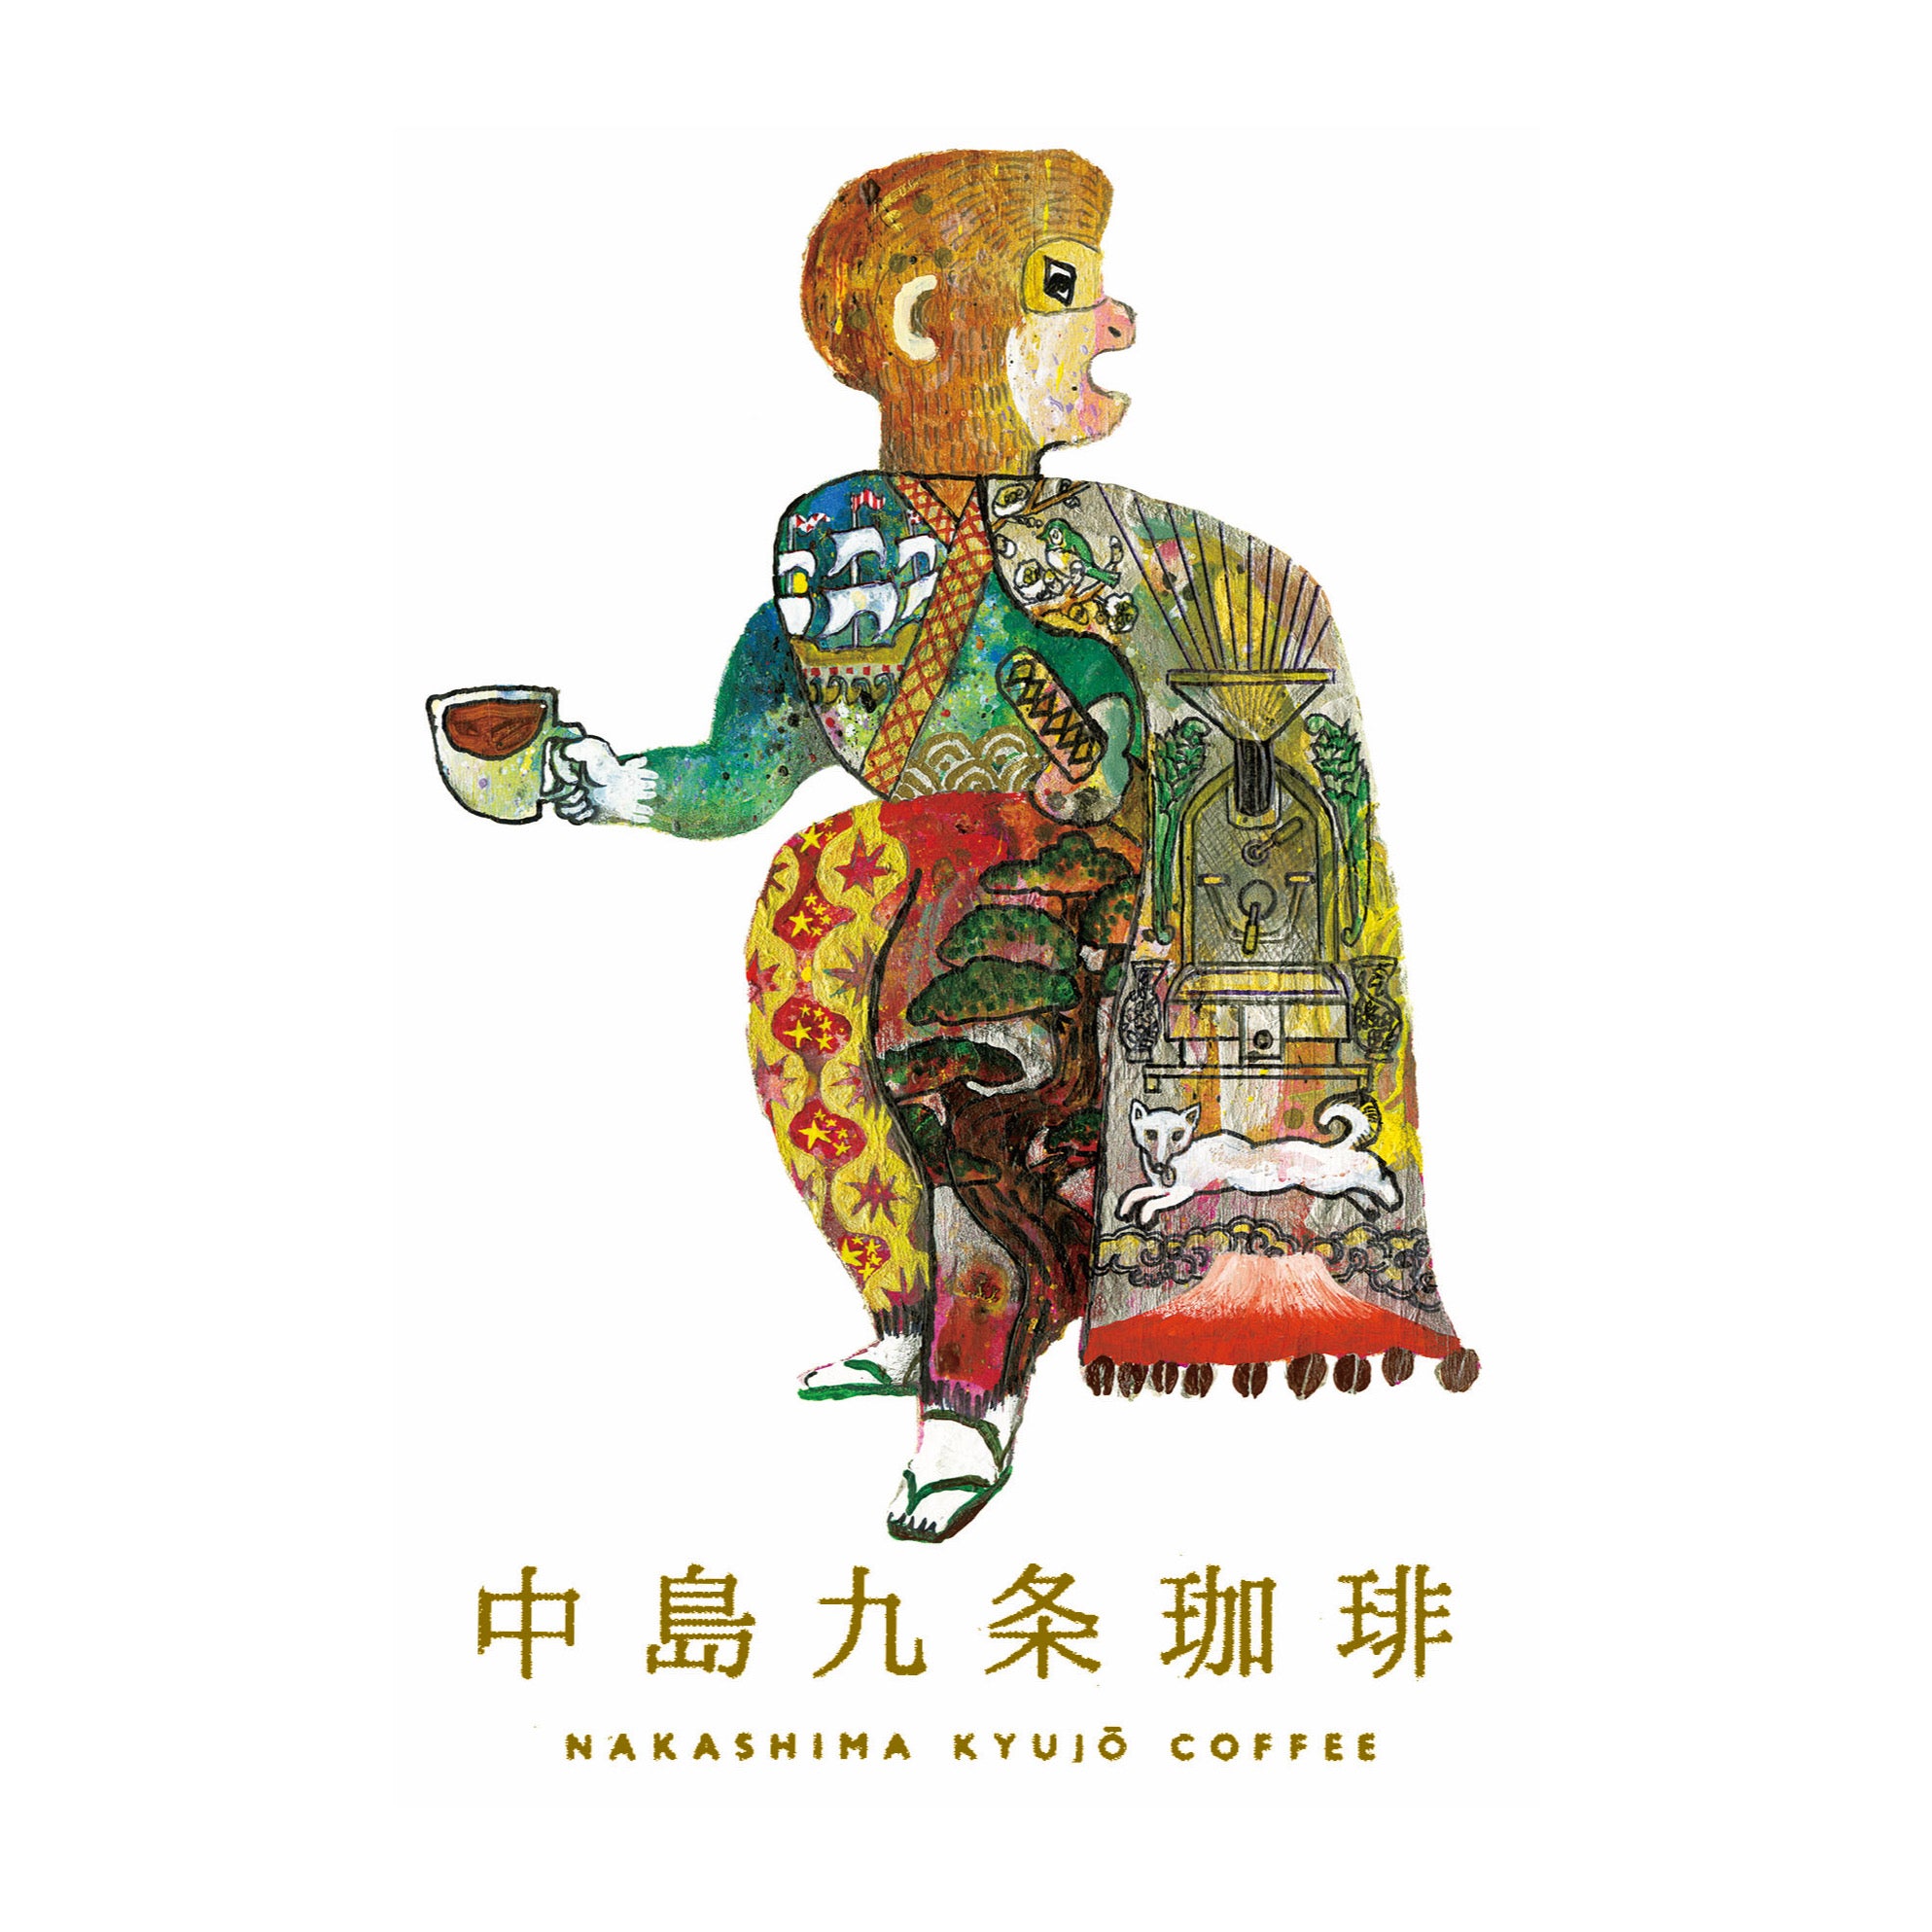 NAKASHIMA KYUJO COFFEE